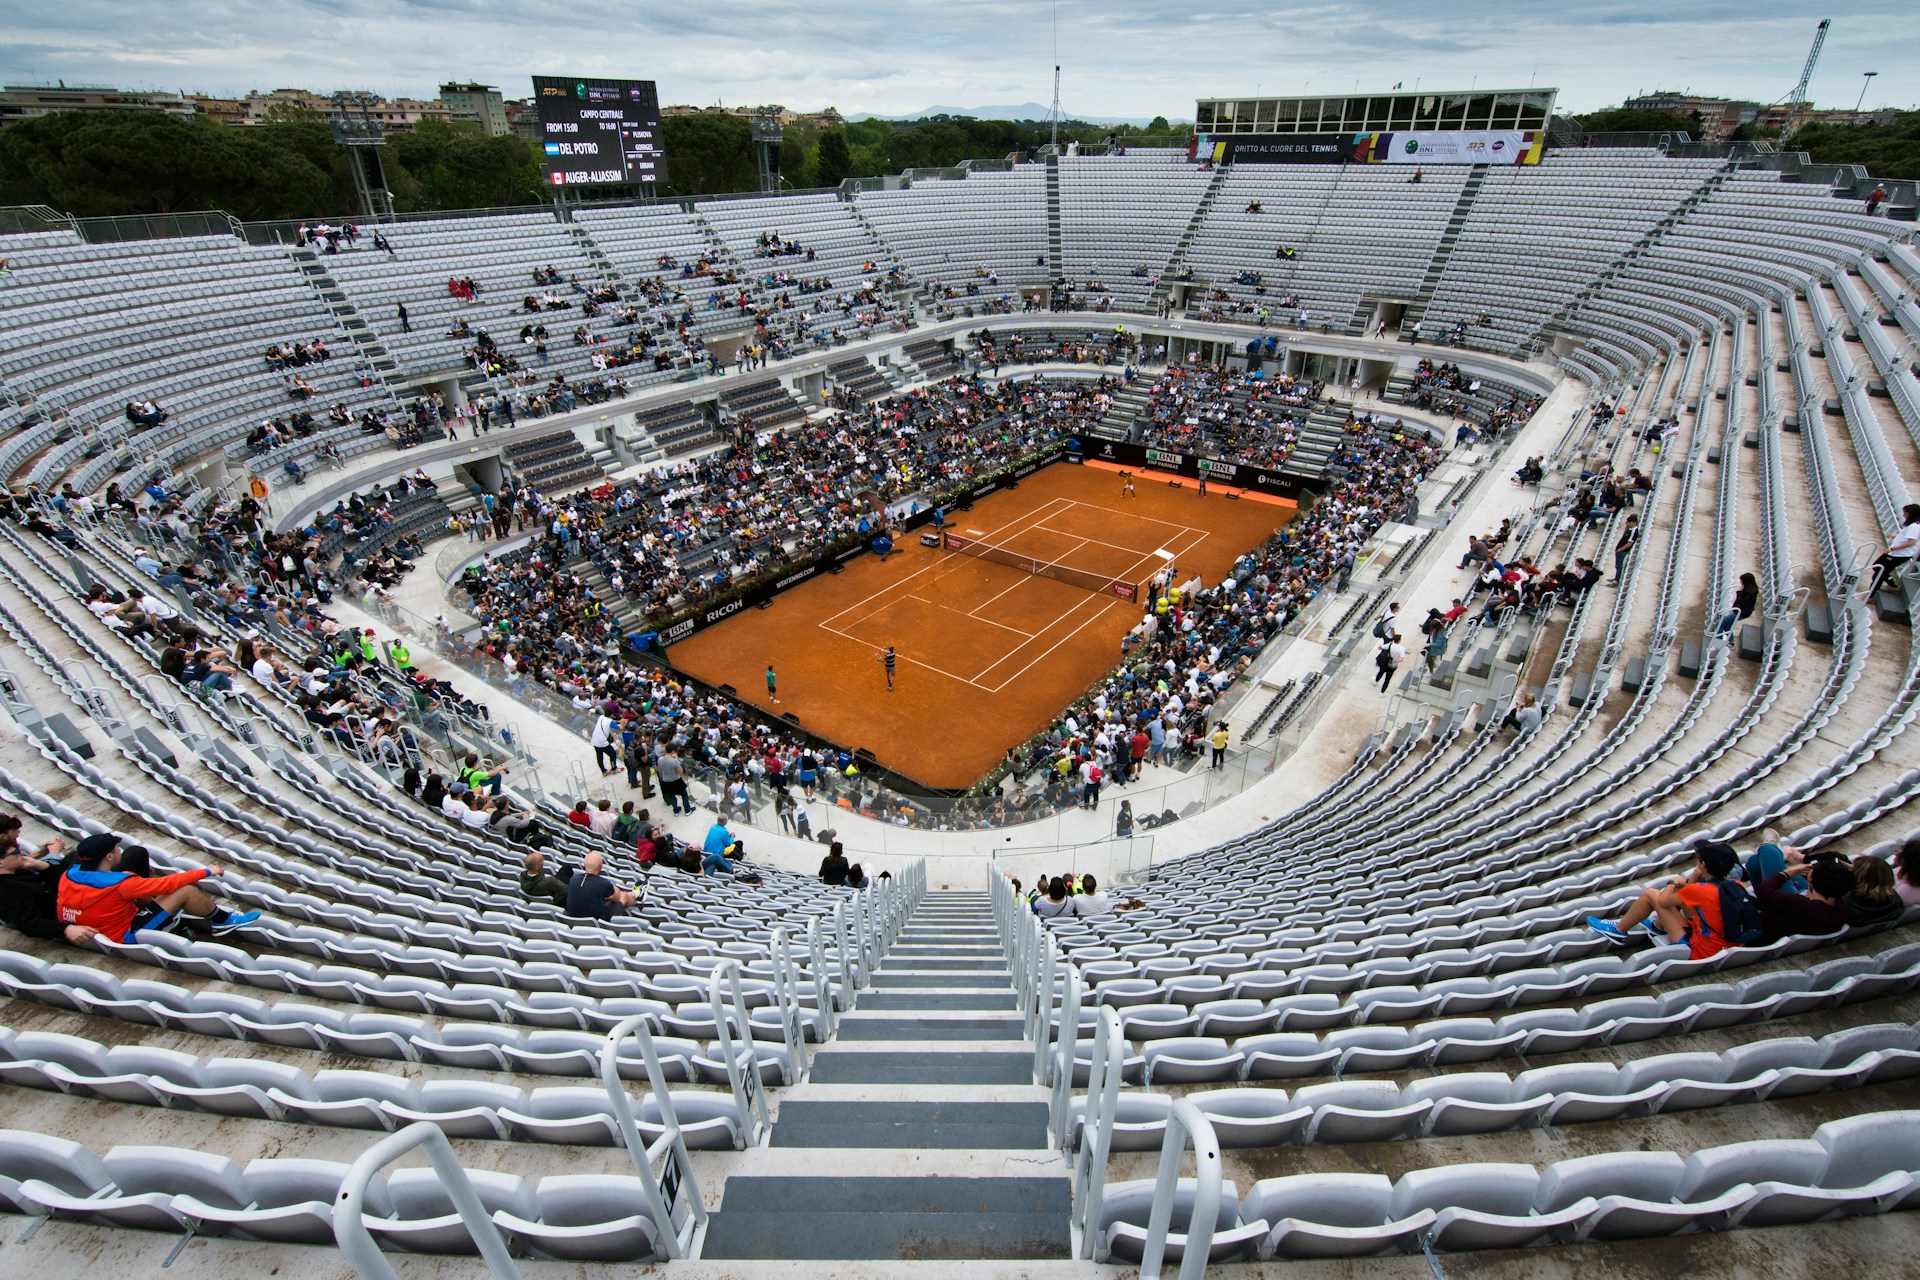 ATP Rome - tennis court